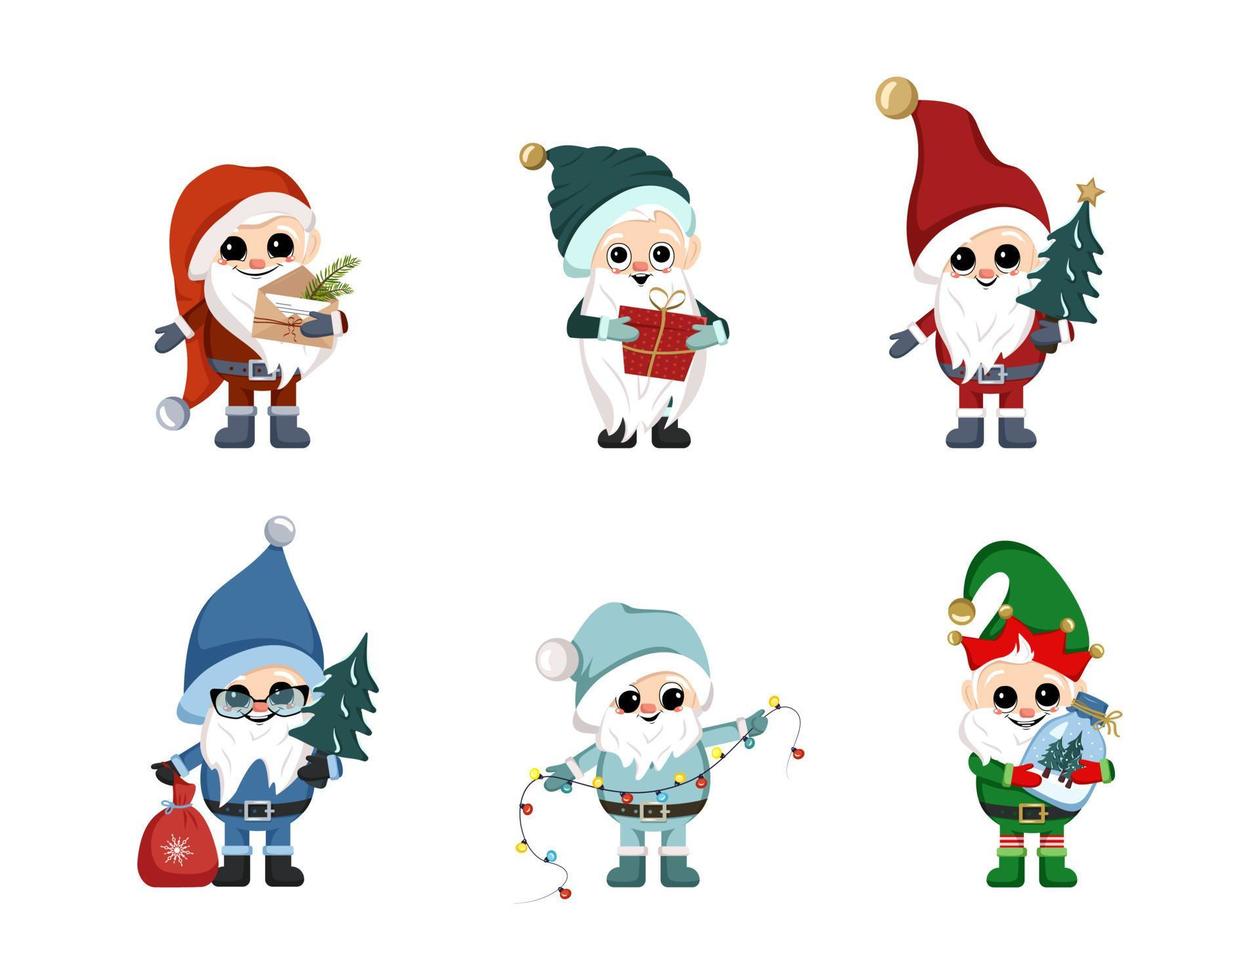 uppsättning av små vintertomtar med långt vitt skägg, lyckligt ansikte och semesterartiklar. karaktär för nyår, jul och vinterdesign vektor